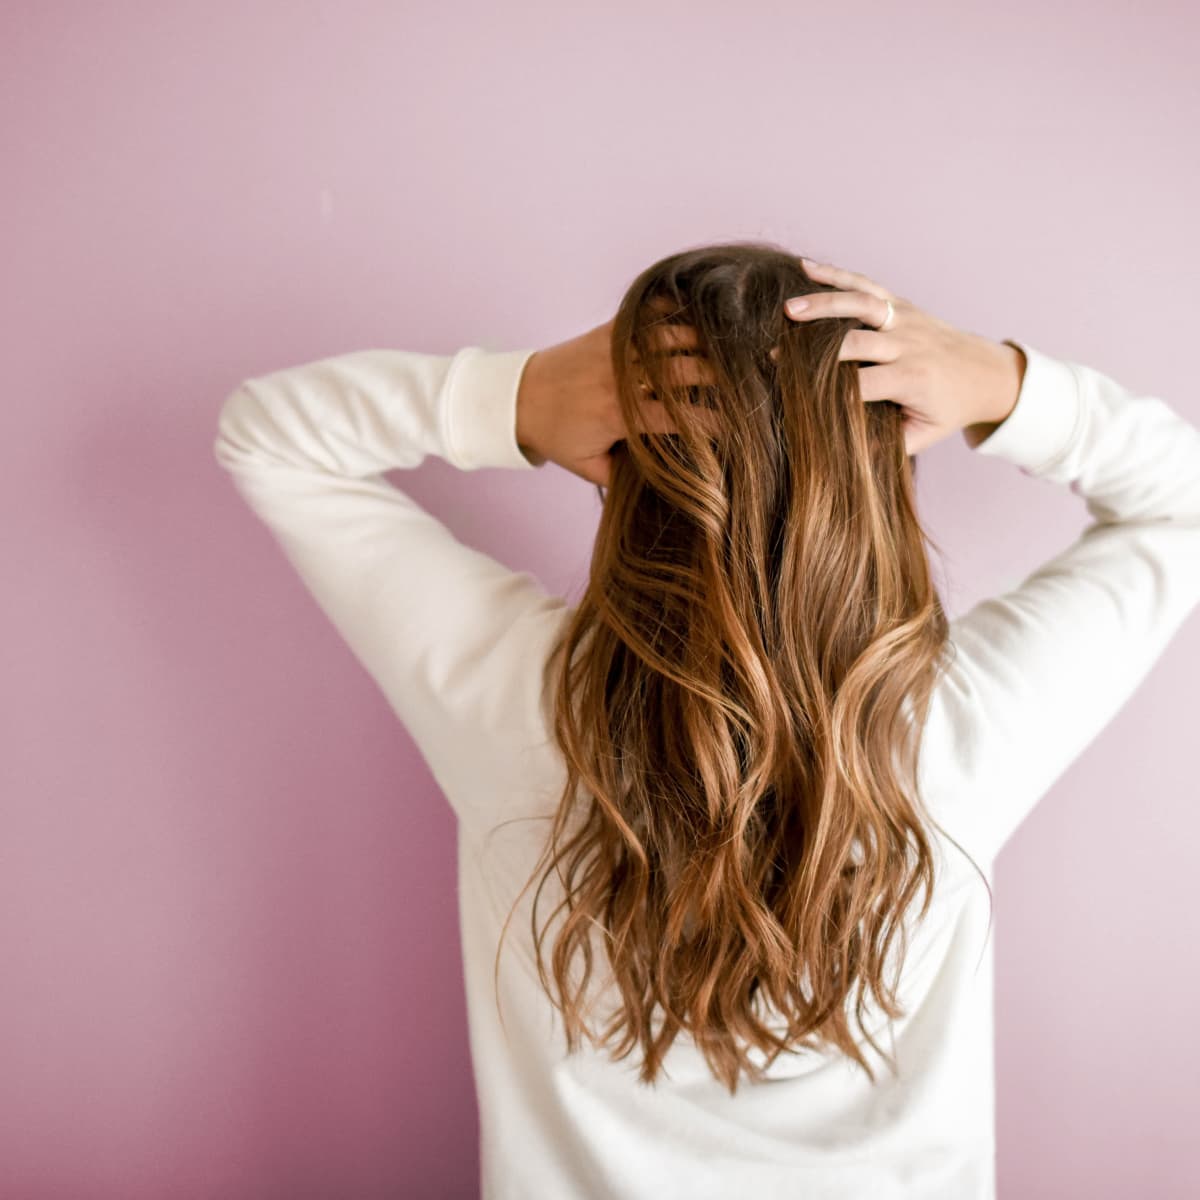 وصفات لعلاج مشاكل الشعر الشائعة